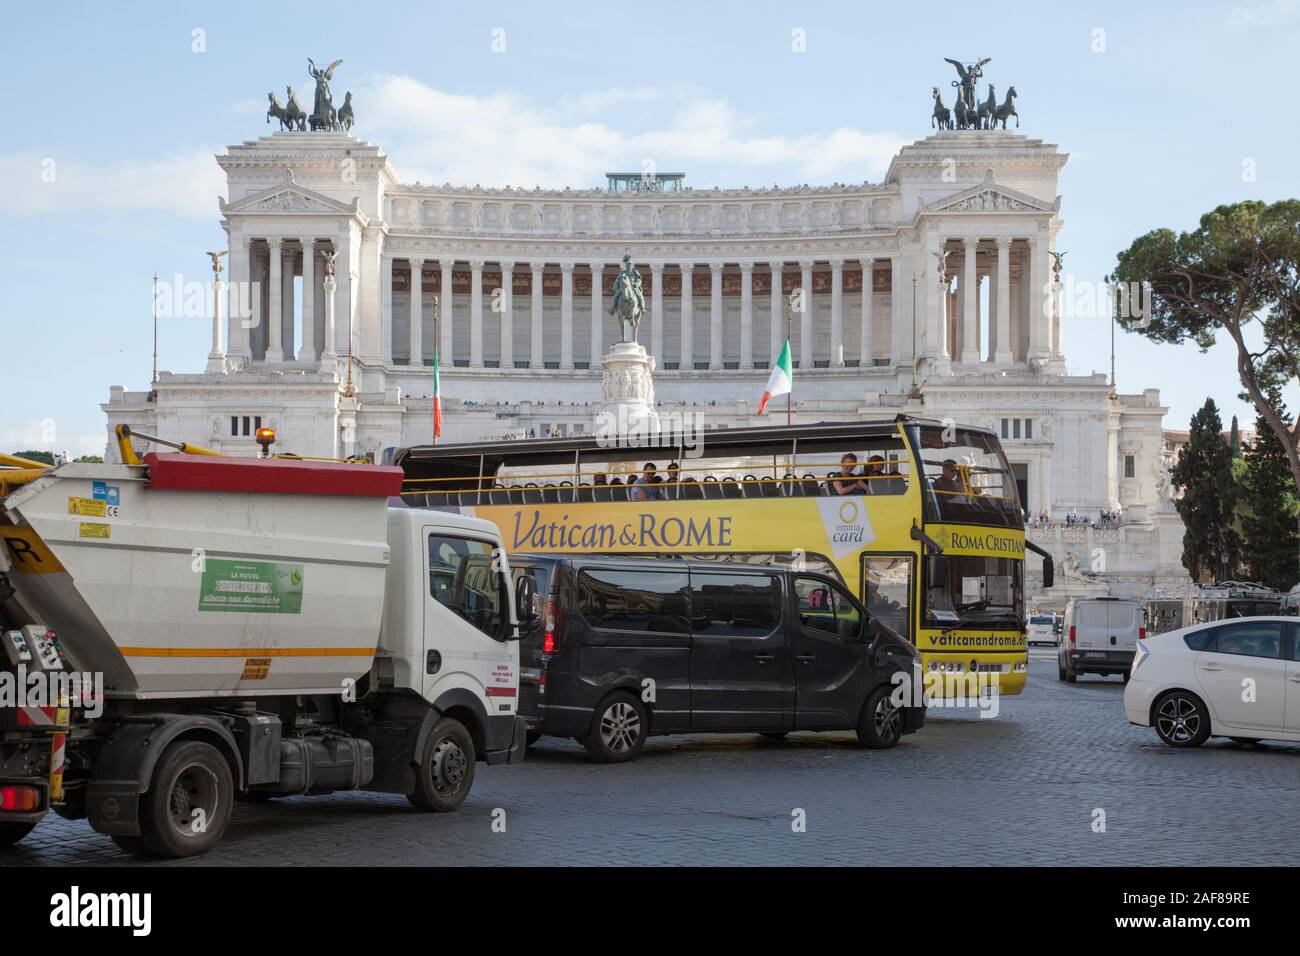 La congestion du trafic à l'extérieur du Monument à Victor Emmanuel II Rome, une ville minée par le smog et la mauvaise qualité de l'air Banque D'Images